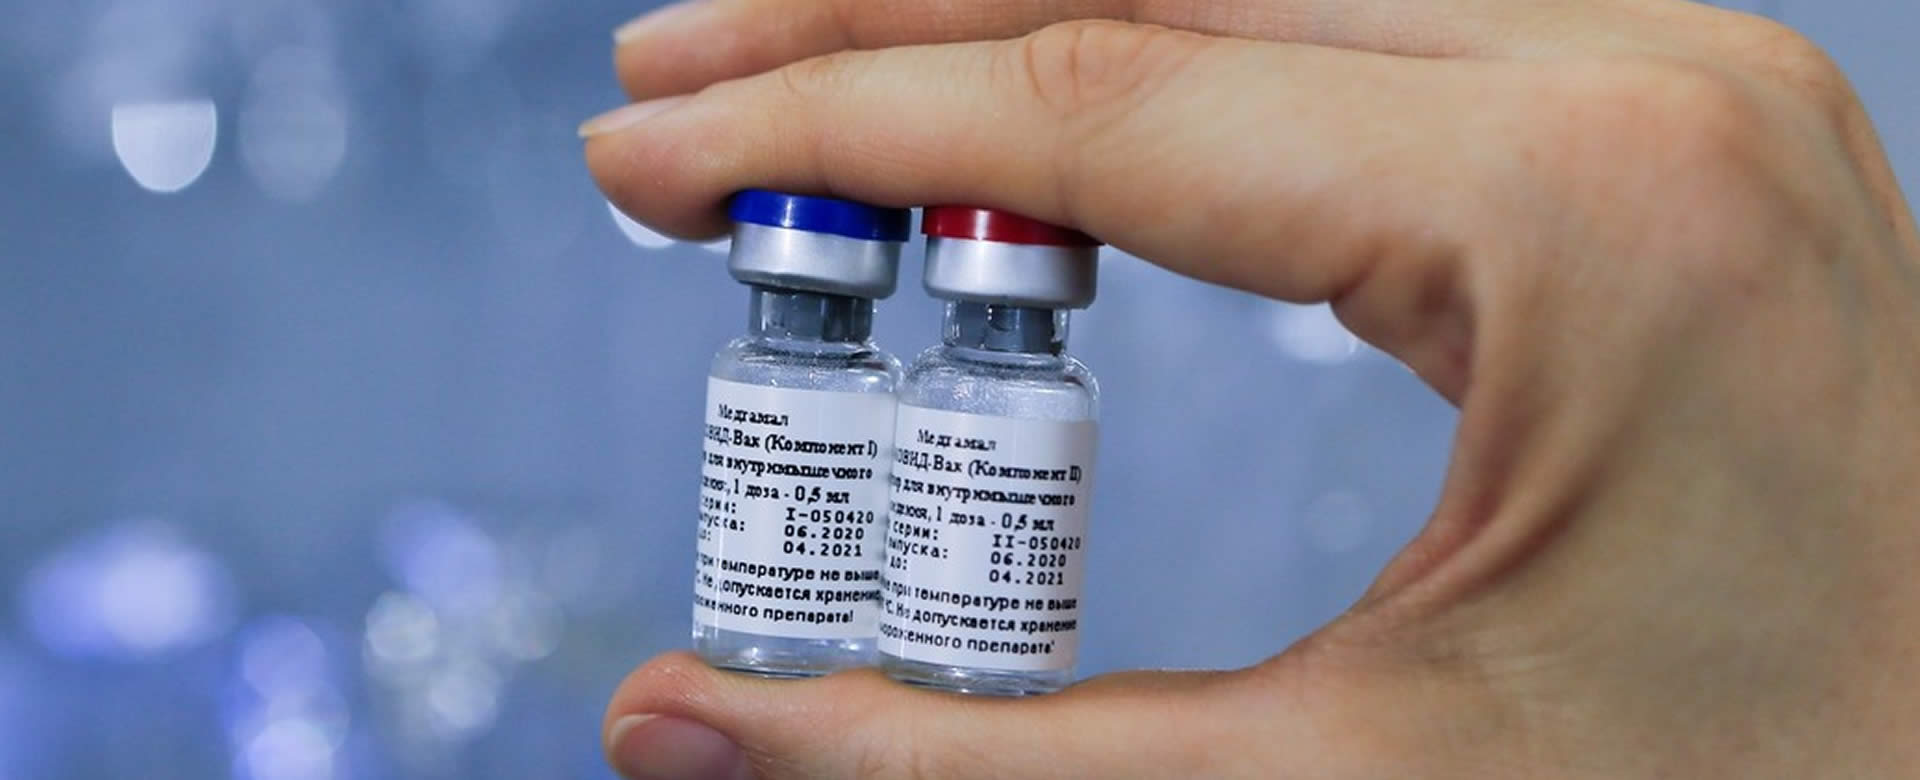 Clínicas rusas tendrán vacuna contra la COVID-19 en los próximos días